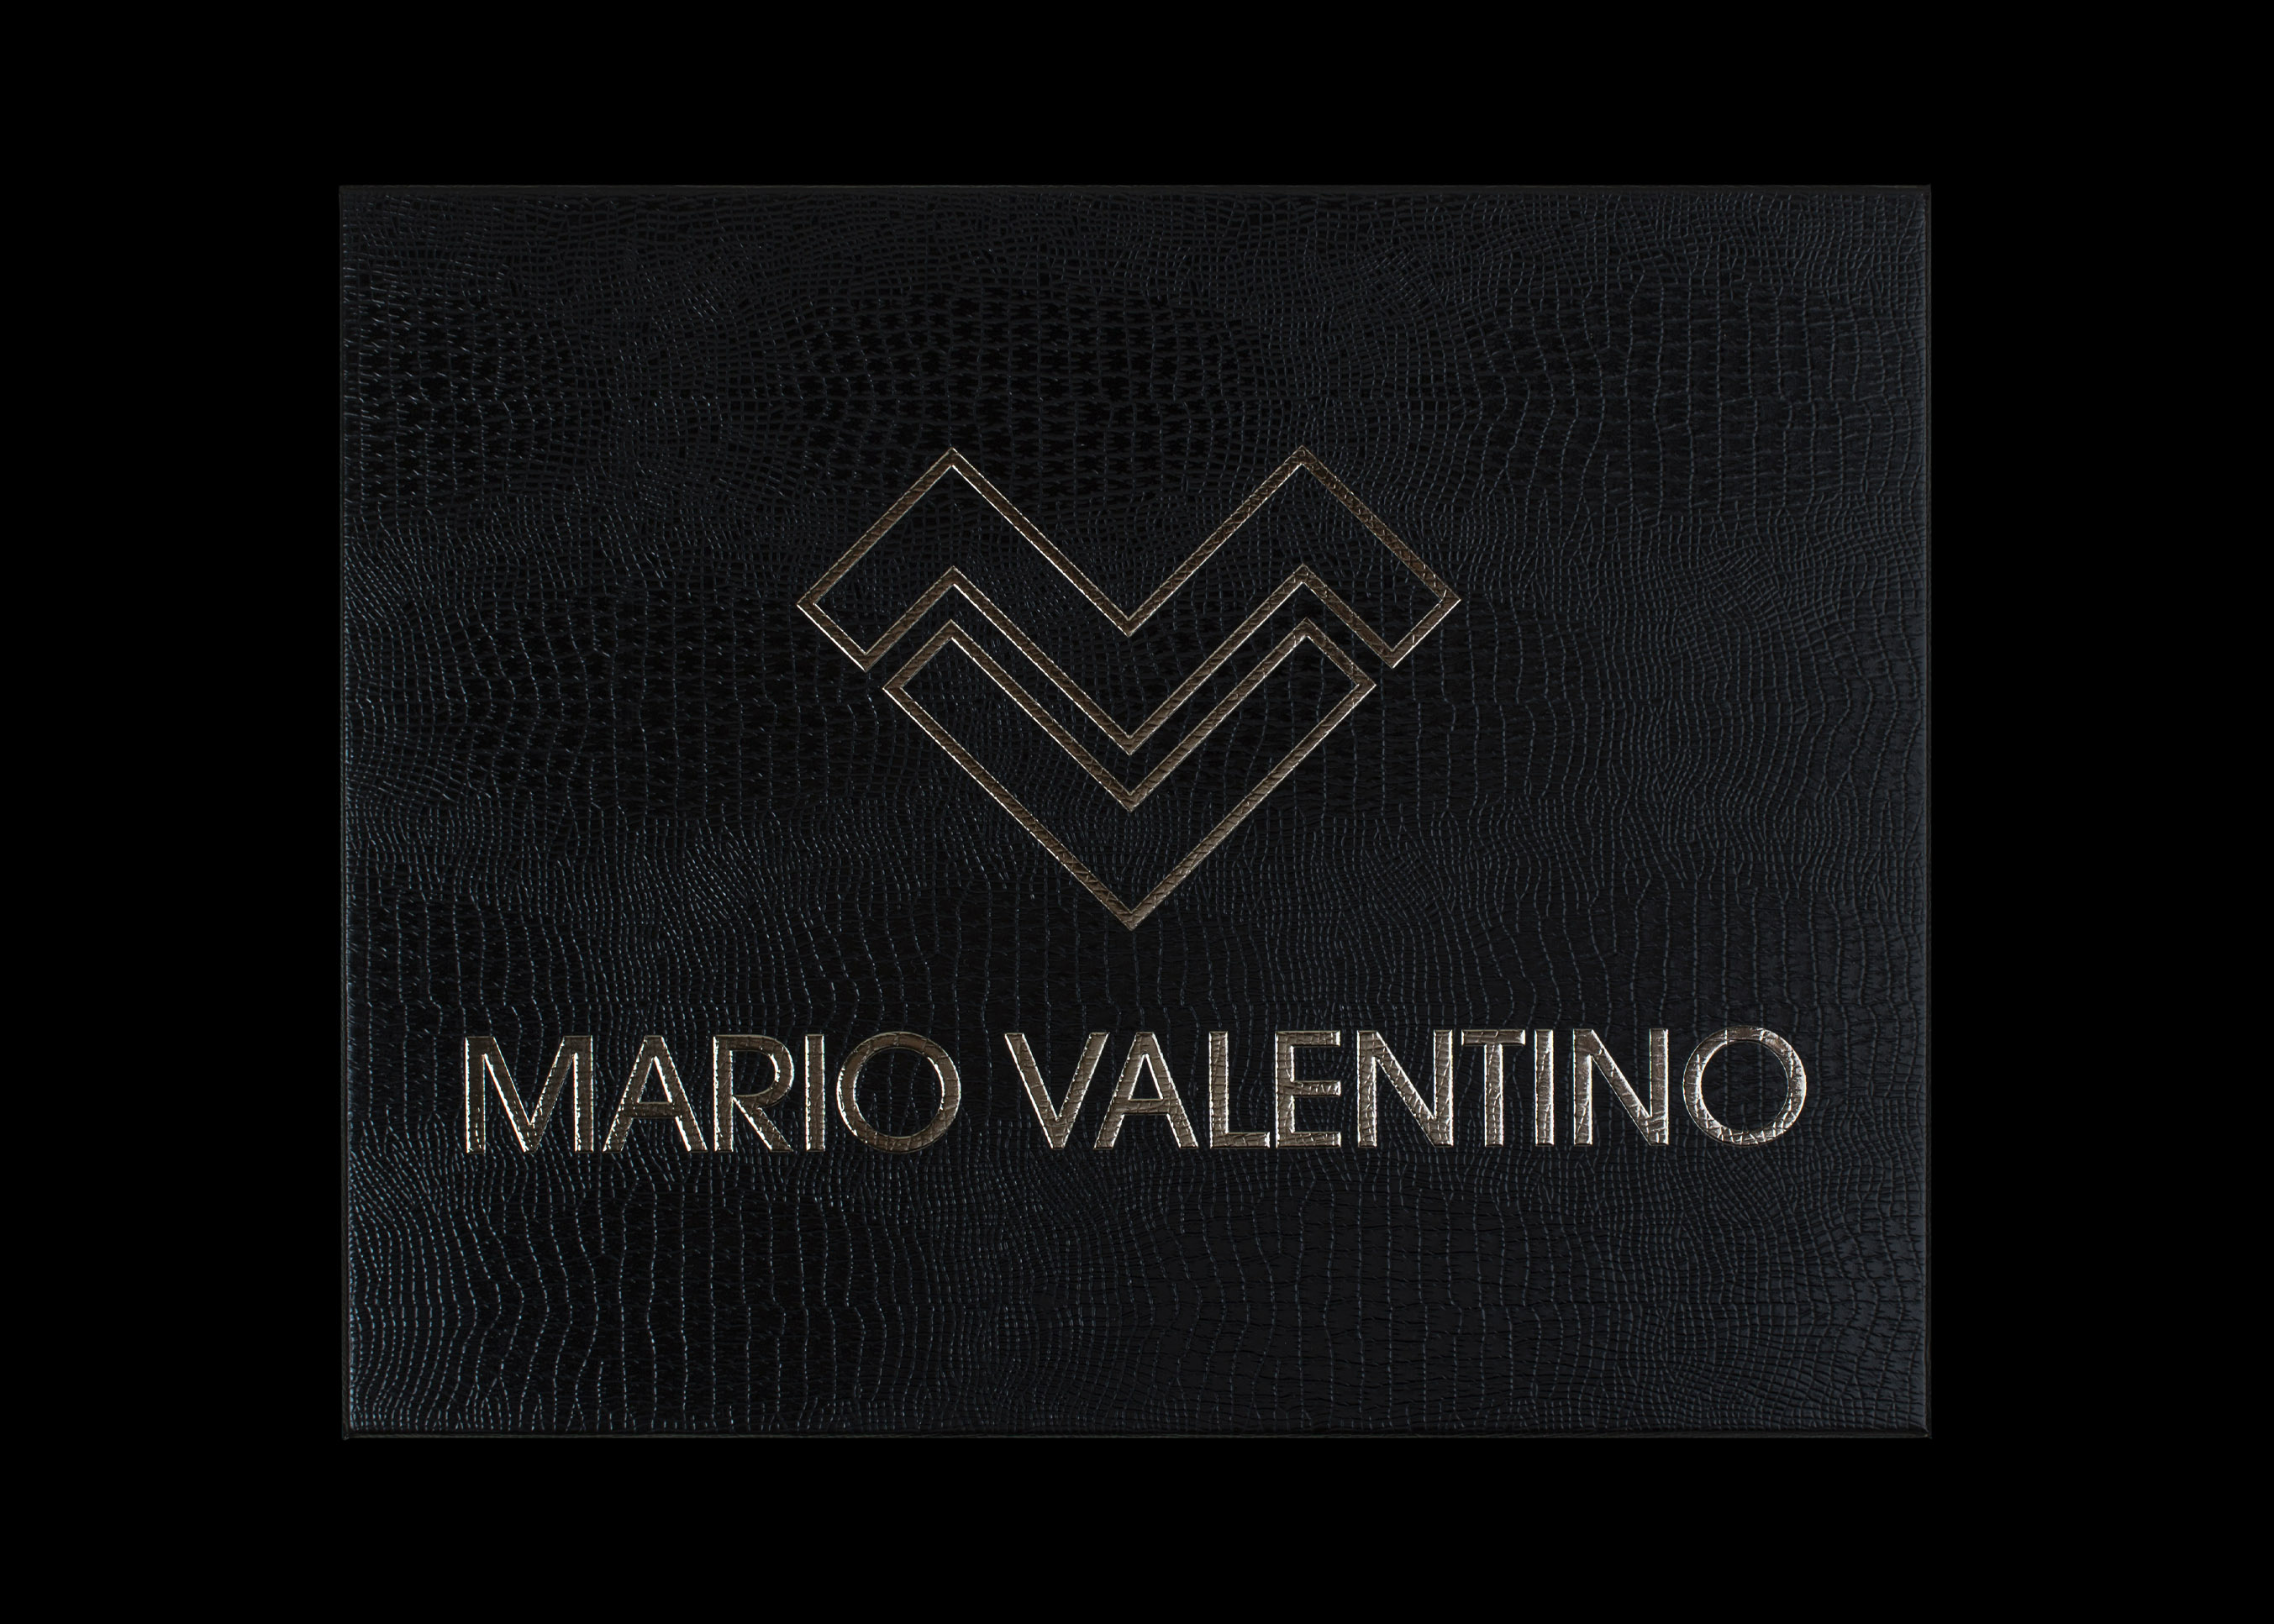  غترة ماريو فالنتينو MVG5